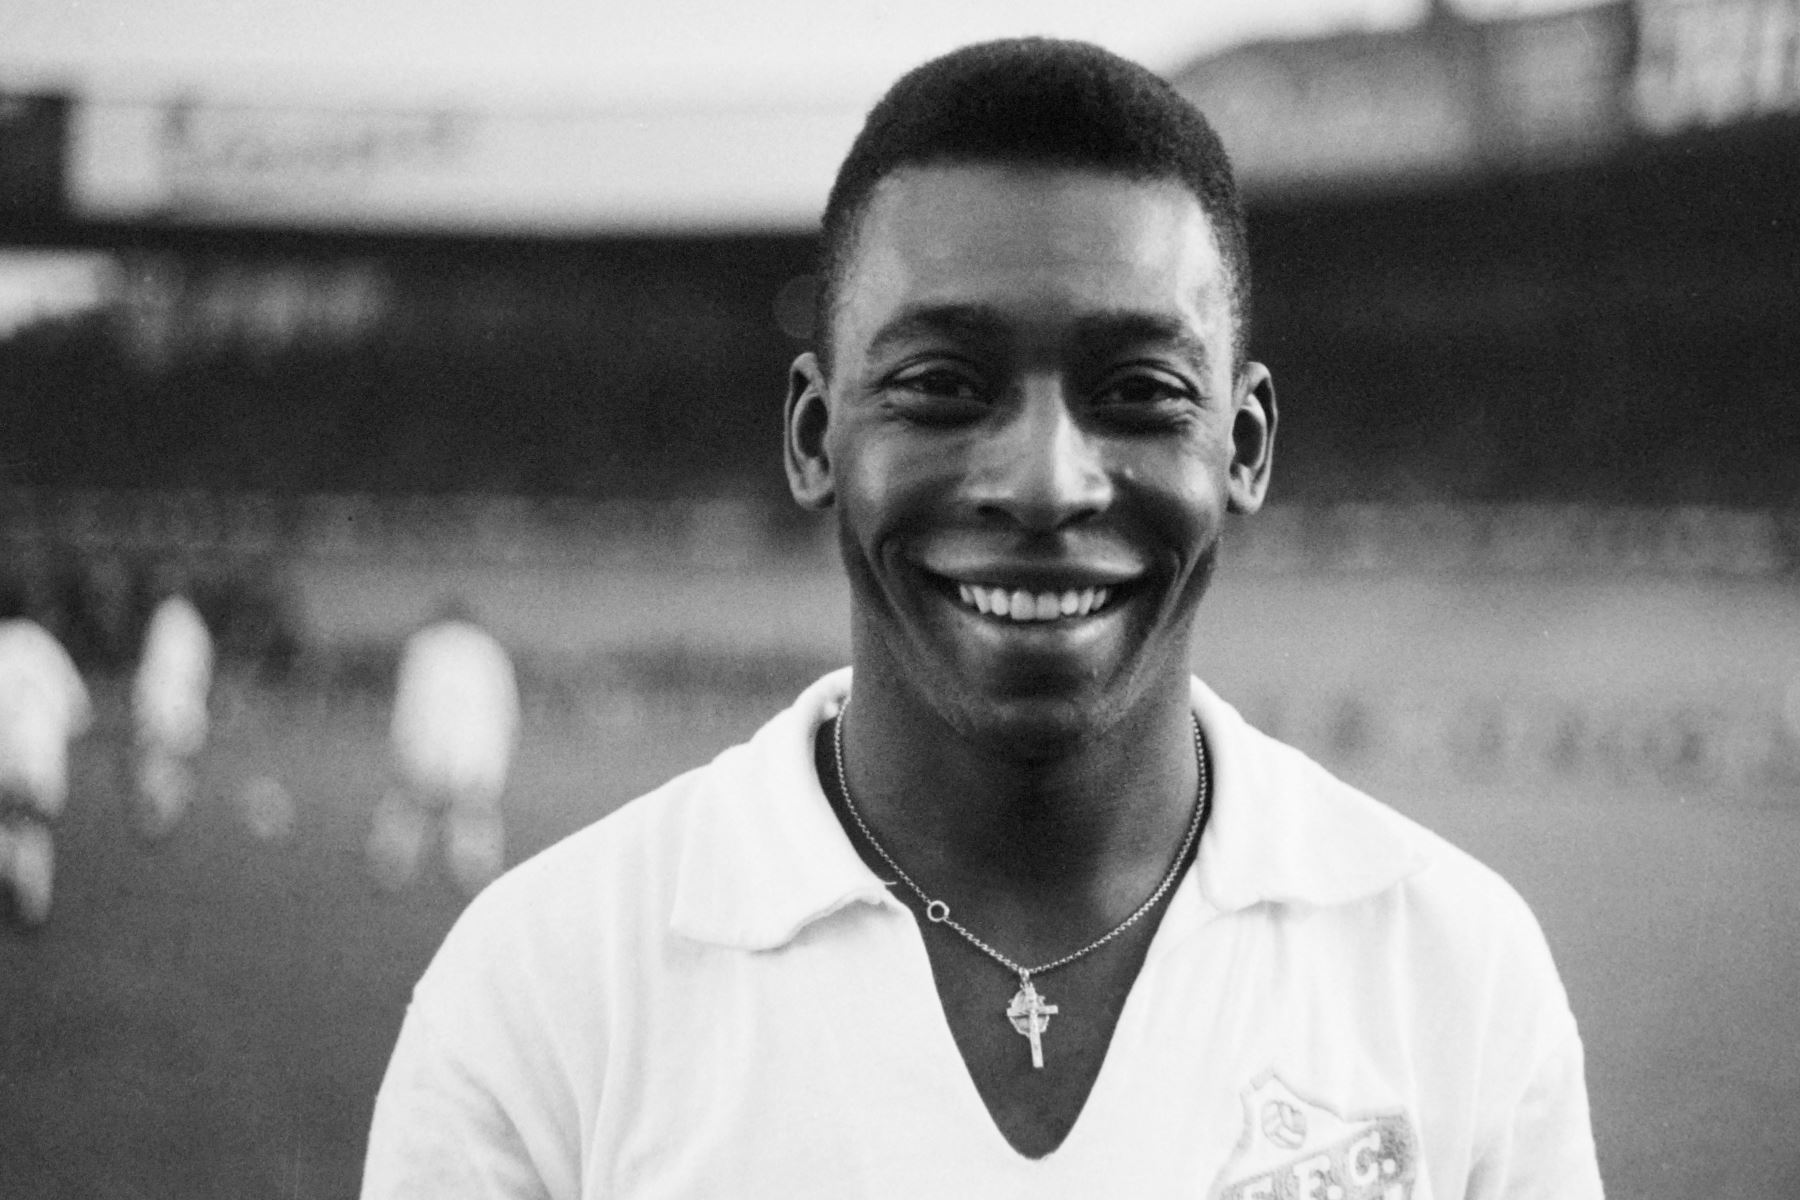 En esta foto de archivo tomada el 13 de junio de 1961, el delantero brasileño Pelé, vestido con la camiseta del Santos, sonríe antes de jugar un partido amistoso de fútbol con su club contra el club francés de "Racing", en Colombes, en las afueras de París. El ícono del fútbol brasileño, Pelé, ampliamente considerado como el mejor jugador de todos los tiempos y tres veces ganador de la Copa del Mundo y autor intelectual del "juego hermoso", murió el 29 de diciembre de 2022 a la edad de 82 años, después de l